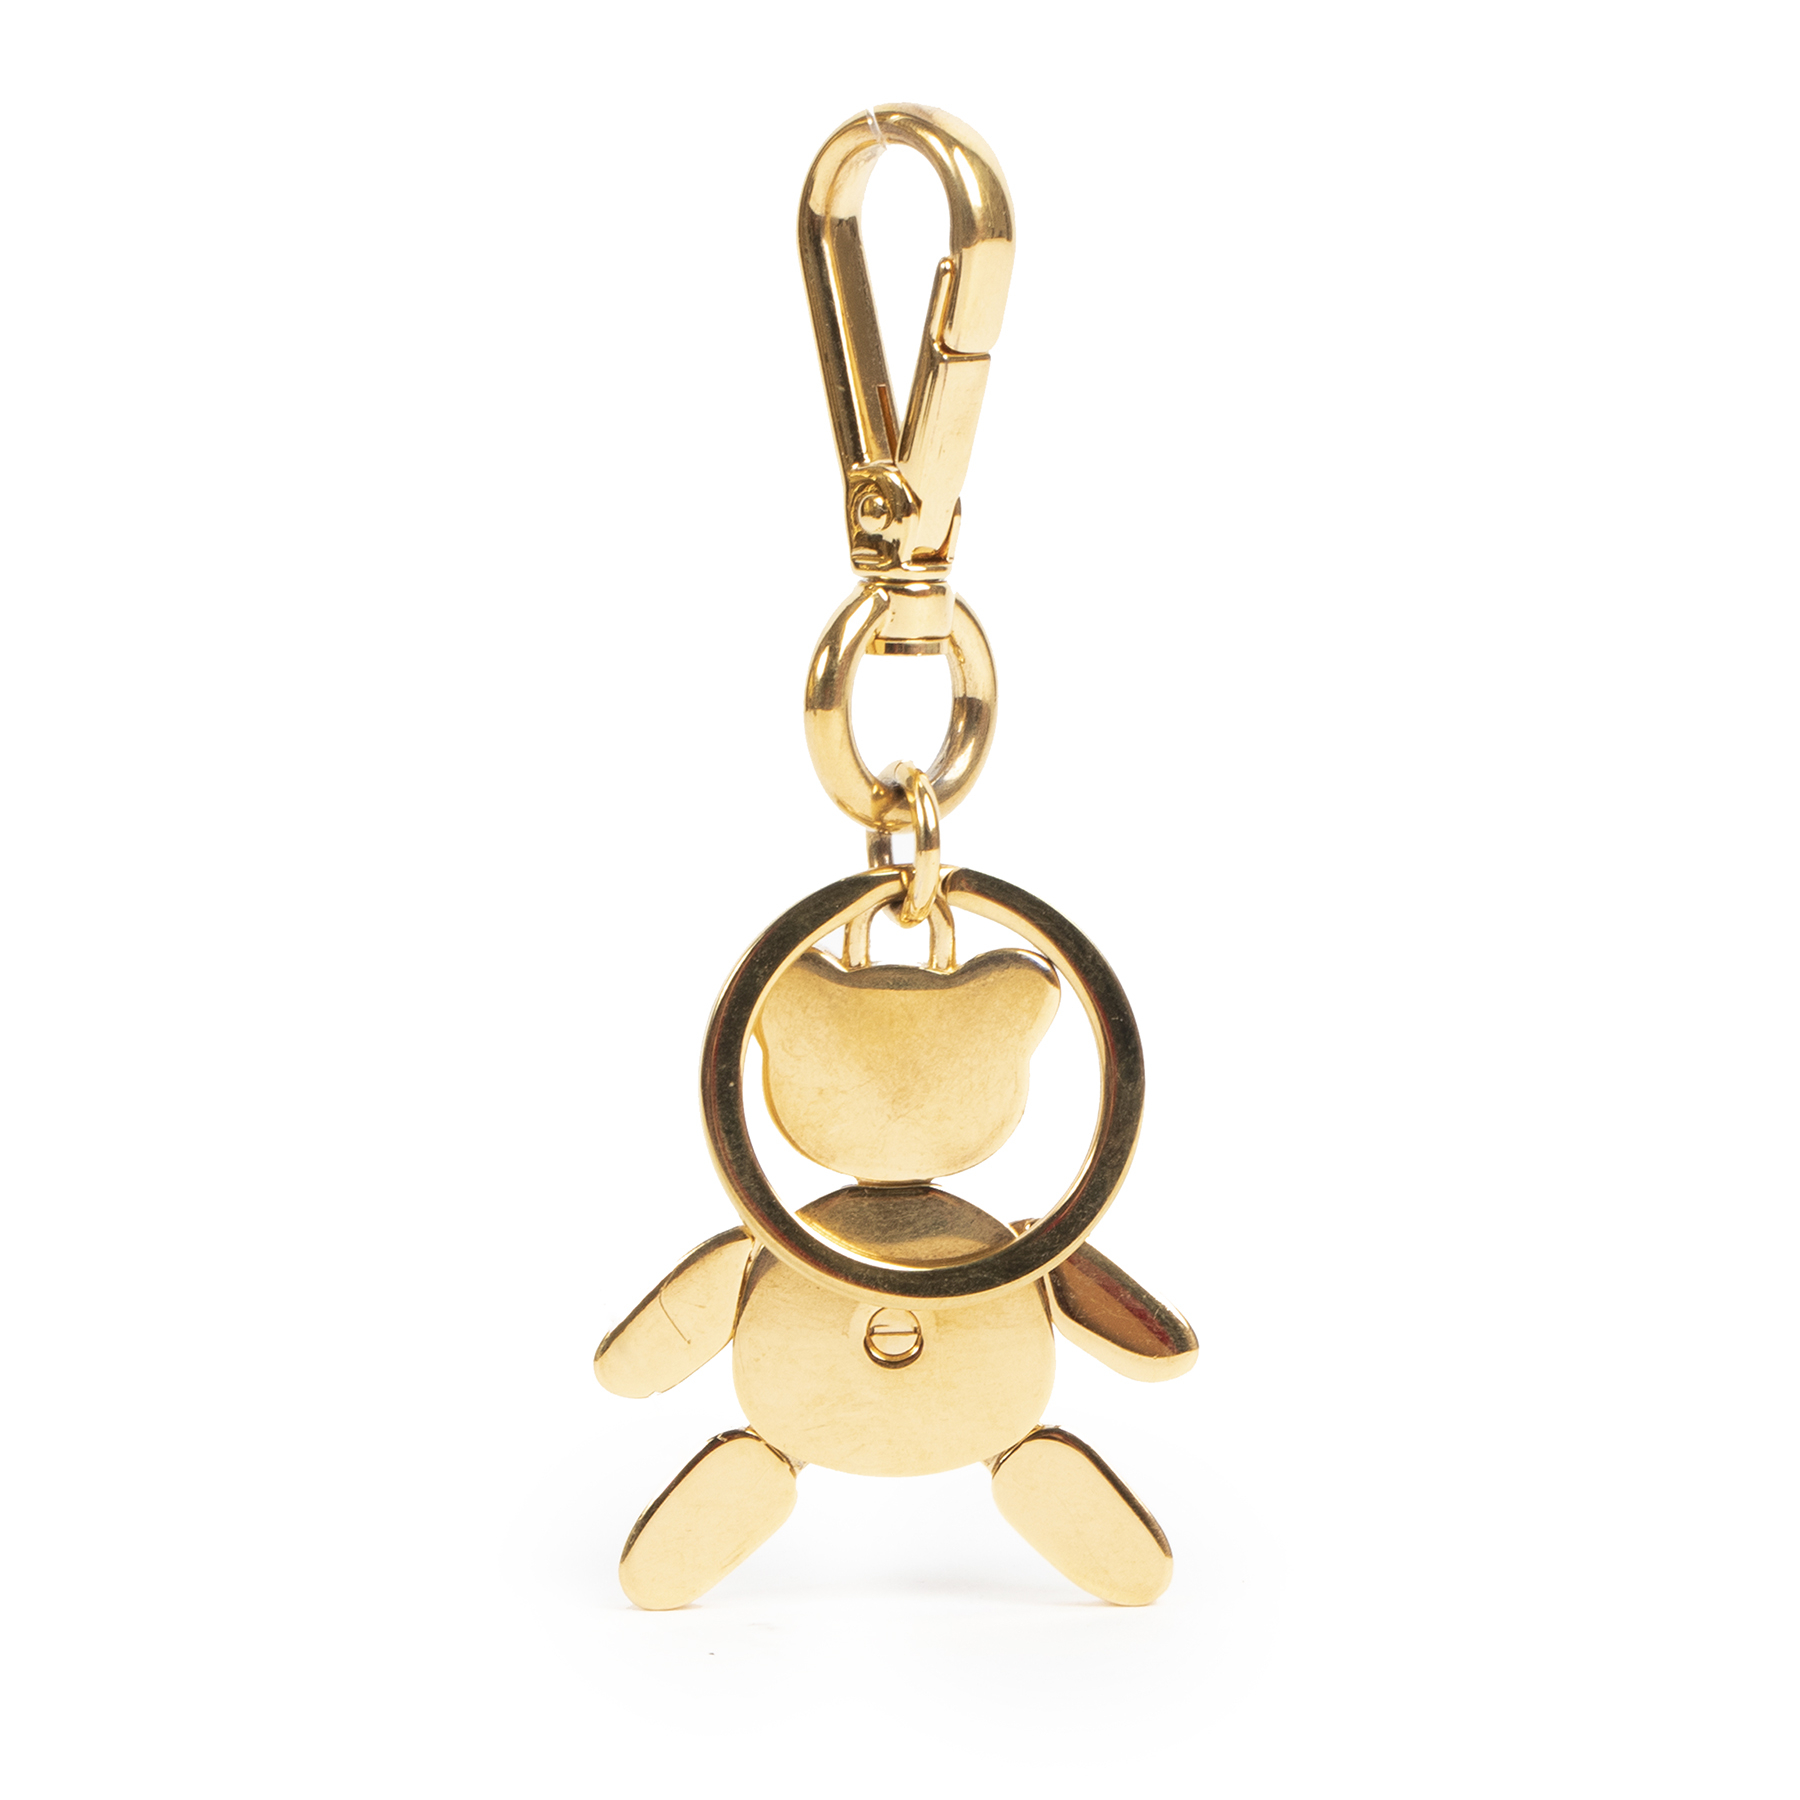 Gucci Teddy Bear Keychain - Gold Keychains, Accessories - GUC1005643